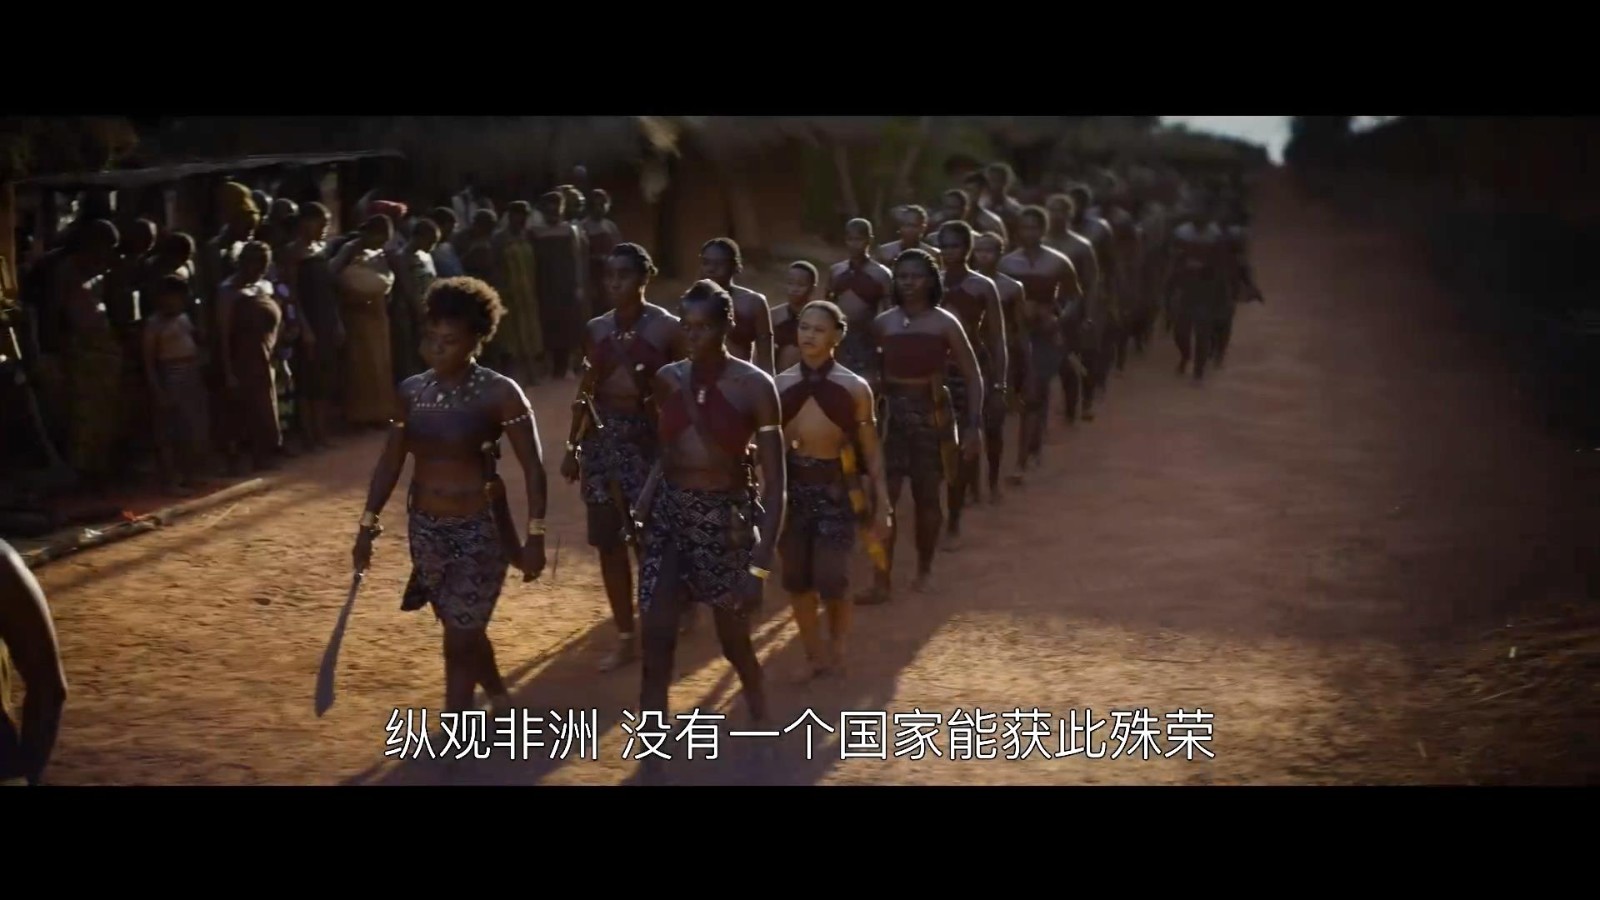 动作片《达荷美女战士》中文预告 她们锐不可挡